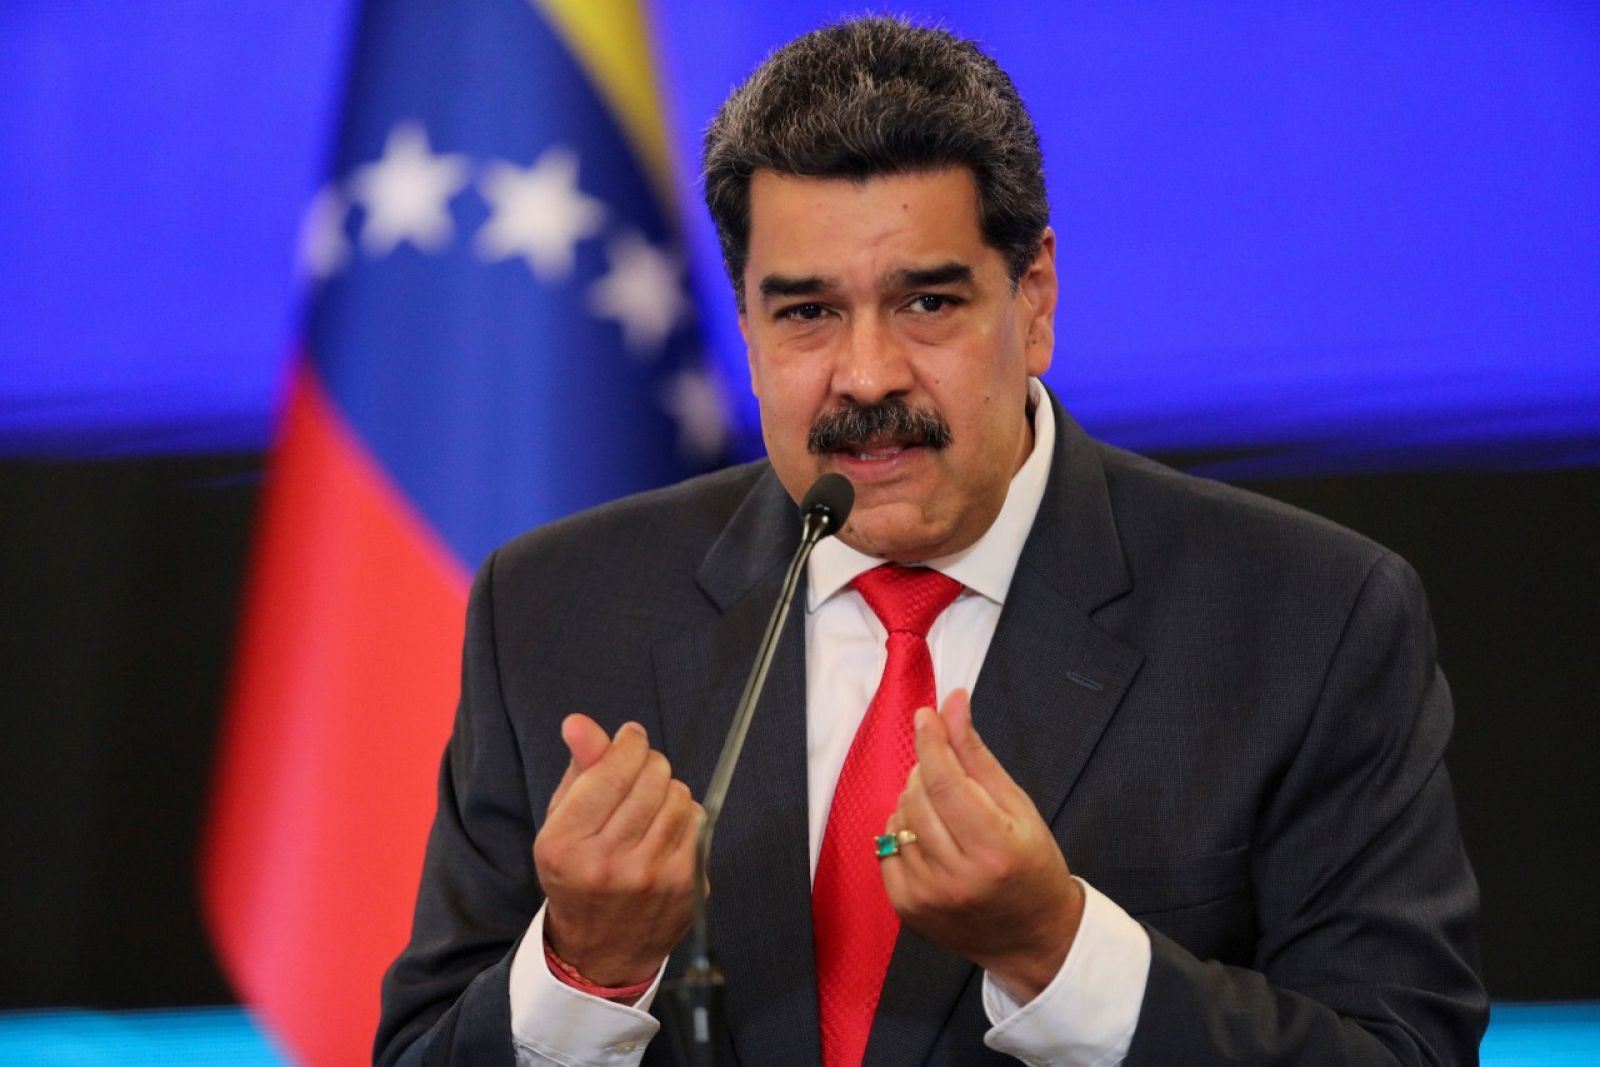 El presidente de Venezuela, Nicolás Maduro, en una imagn del 8 de diciembre de 2020.